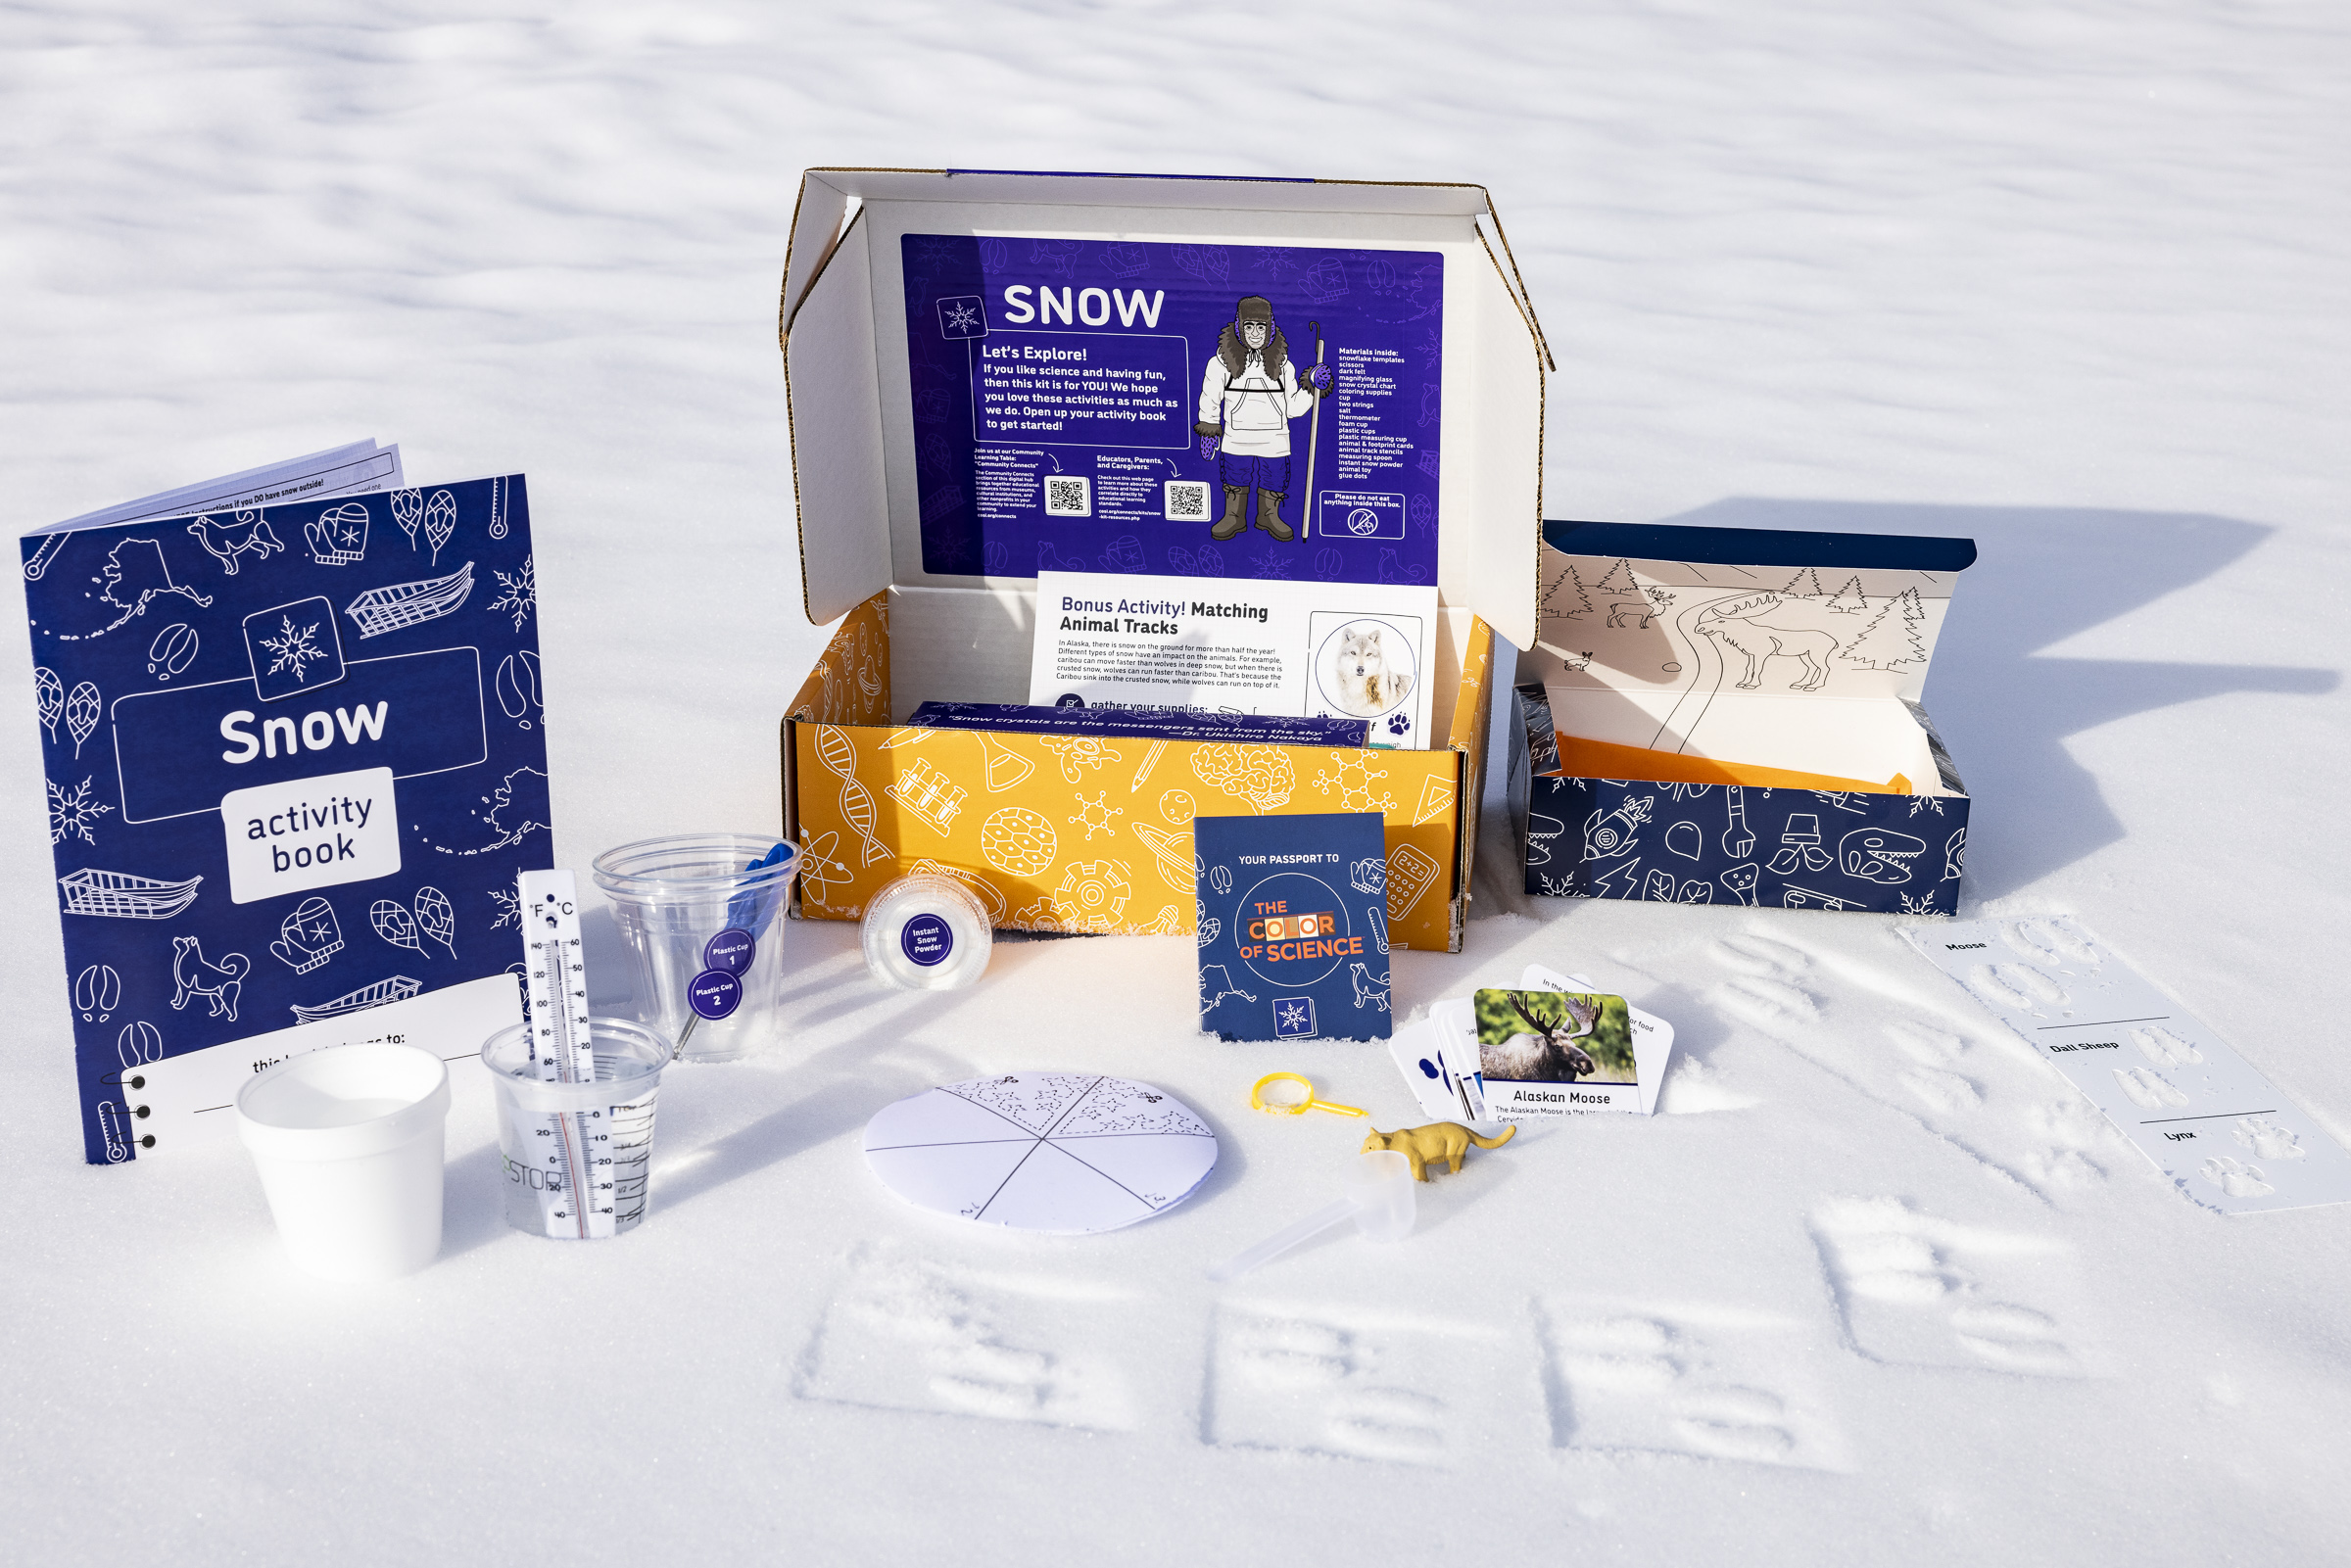 Snow kit